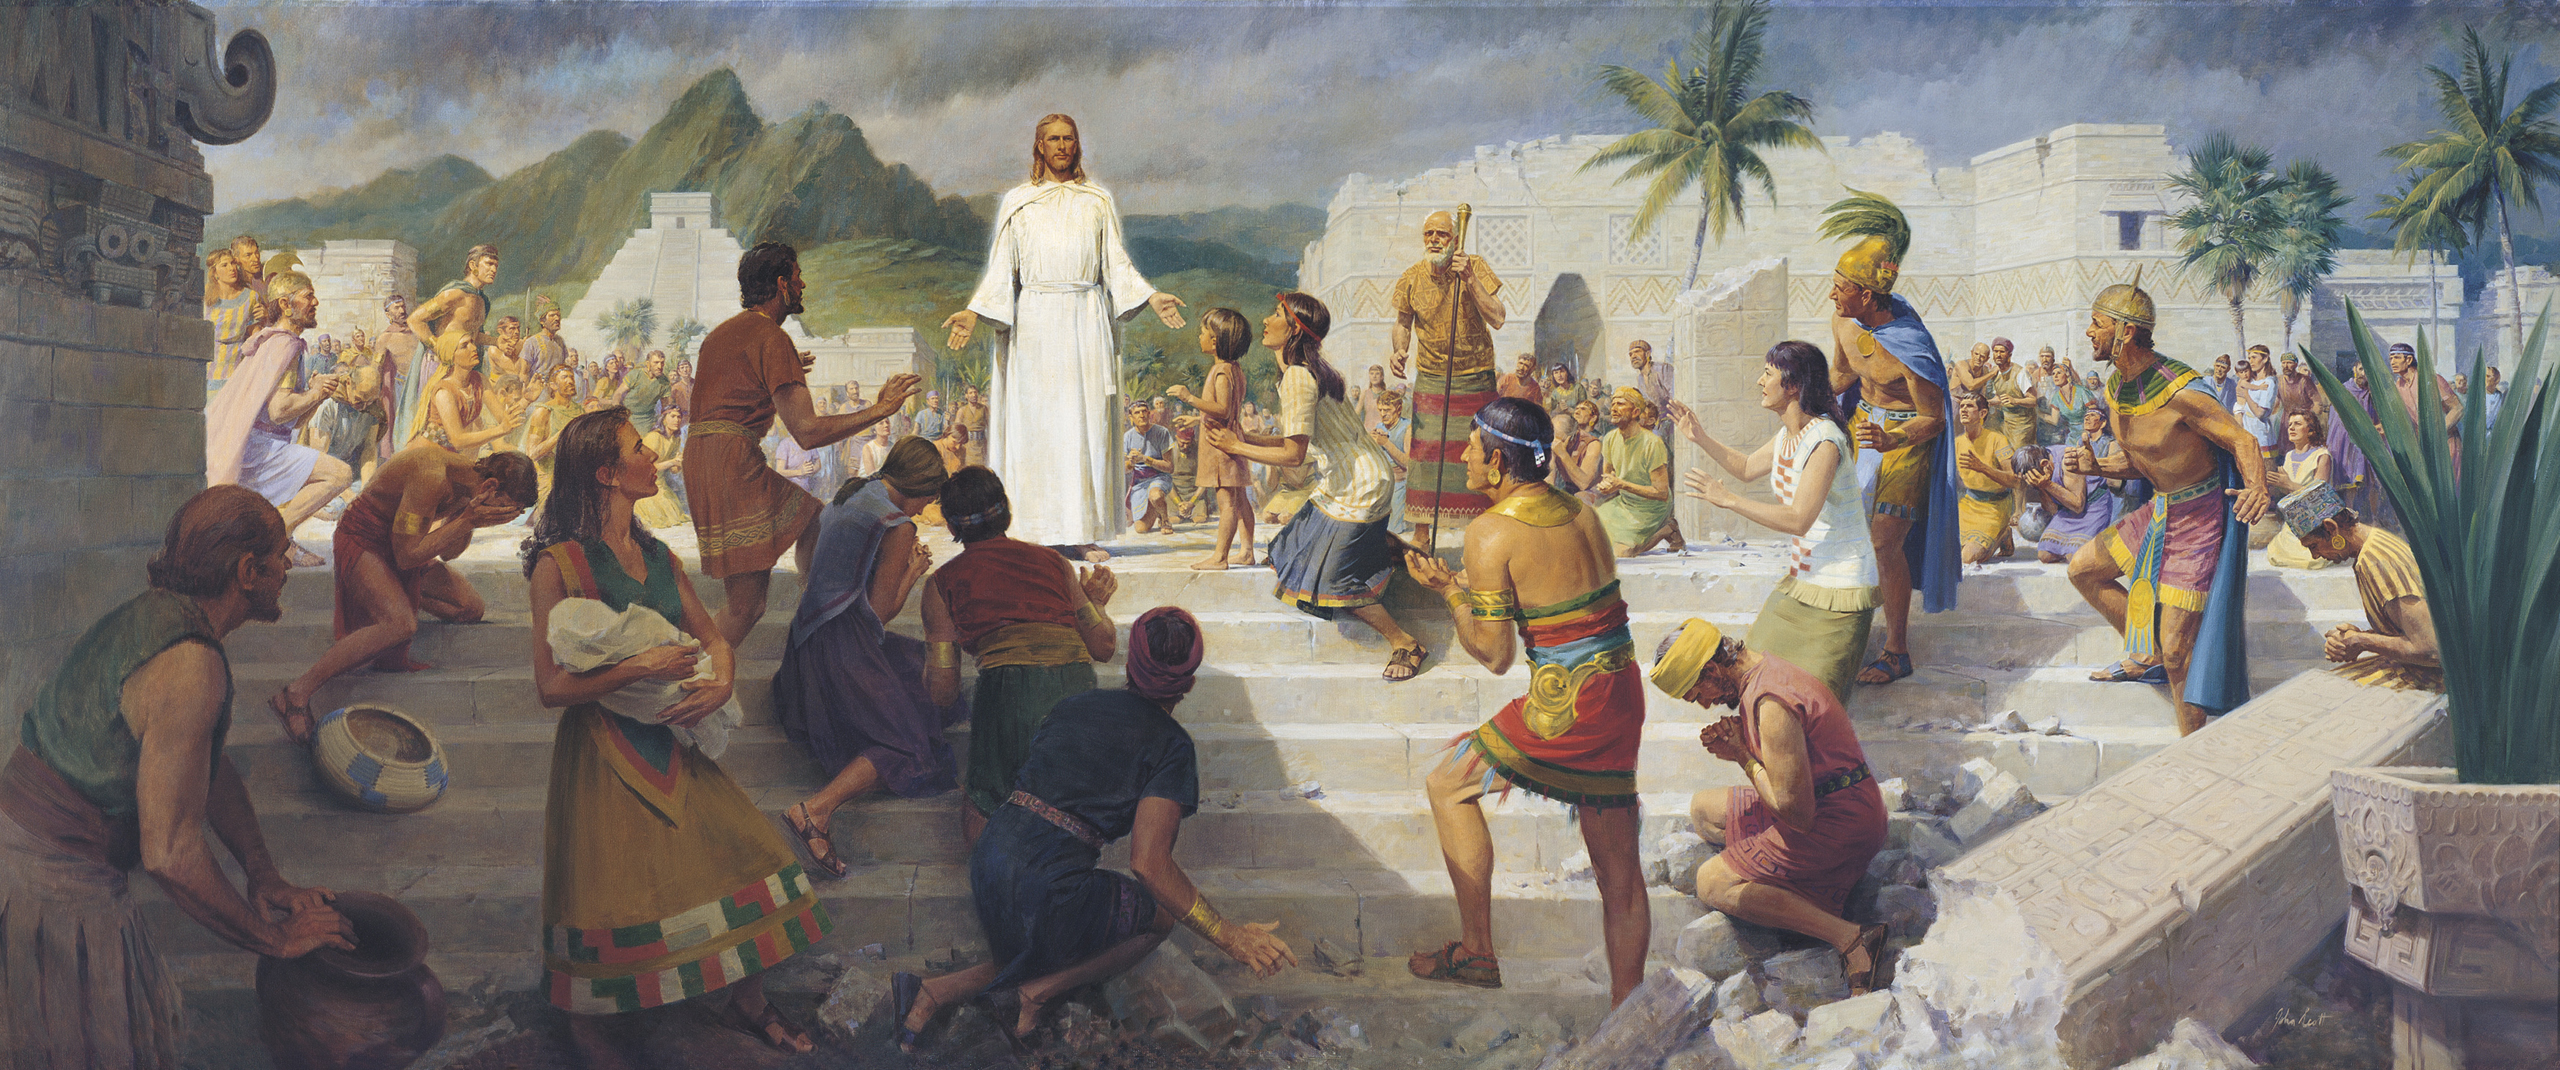 Jesus Teaching In The Western Hemisphere Christ Visits